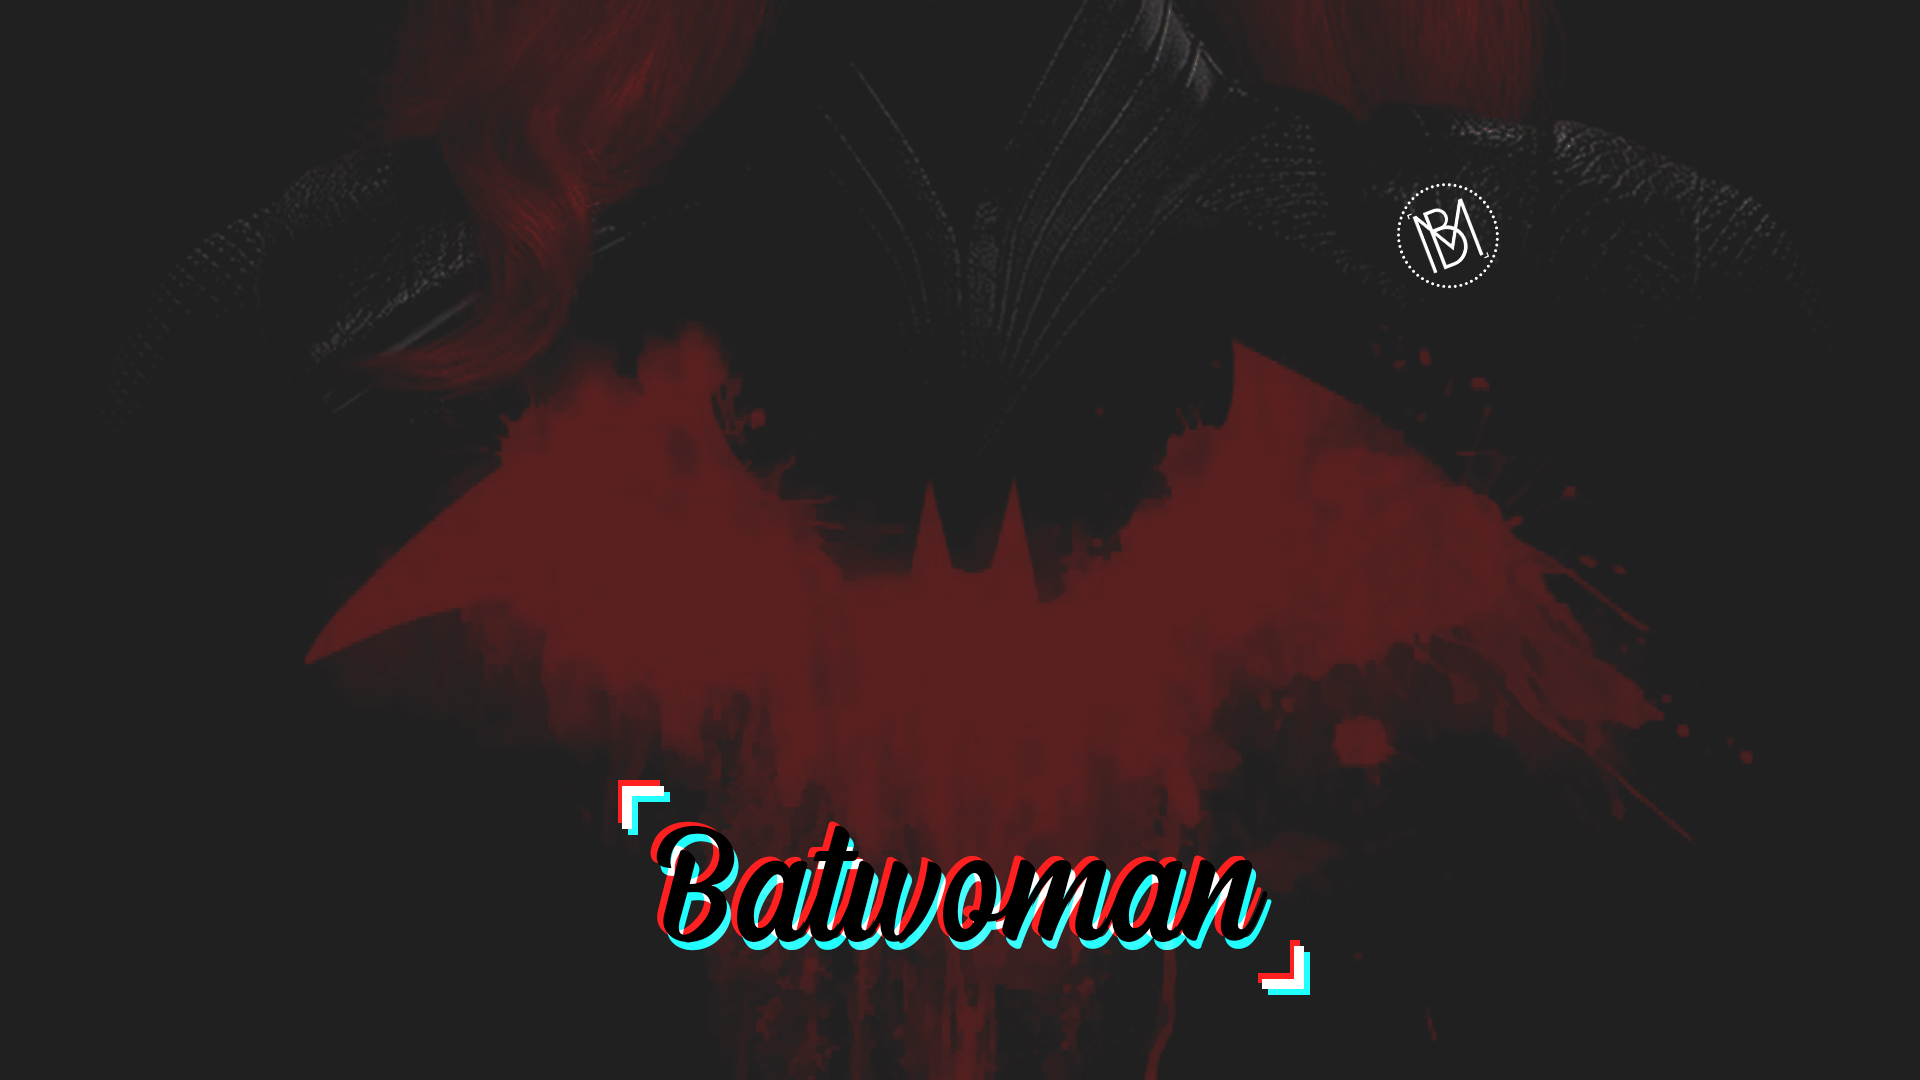 Batwoman Batman Batwomancw Thecw DC Comics Arrowverse Batwoman Serie 1920x1080